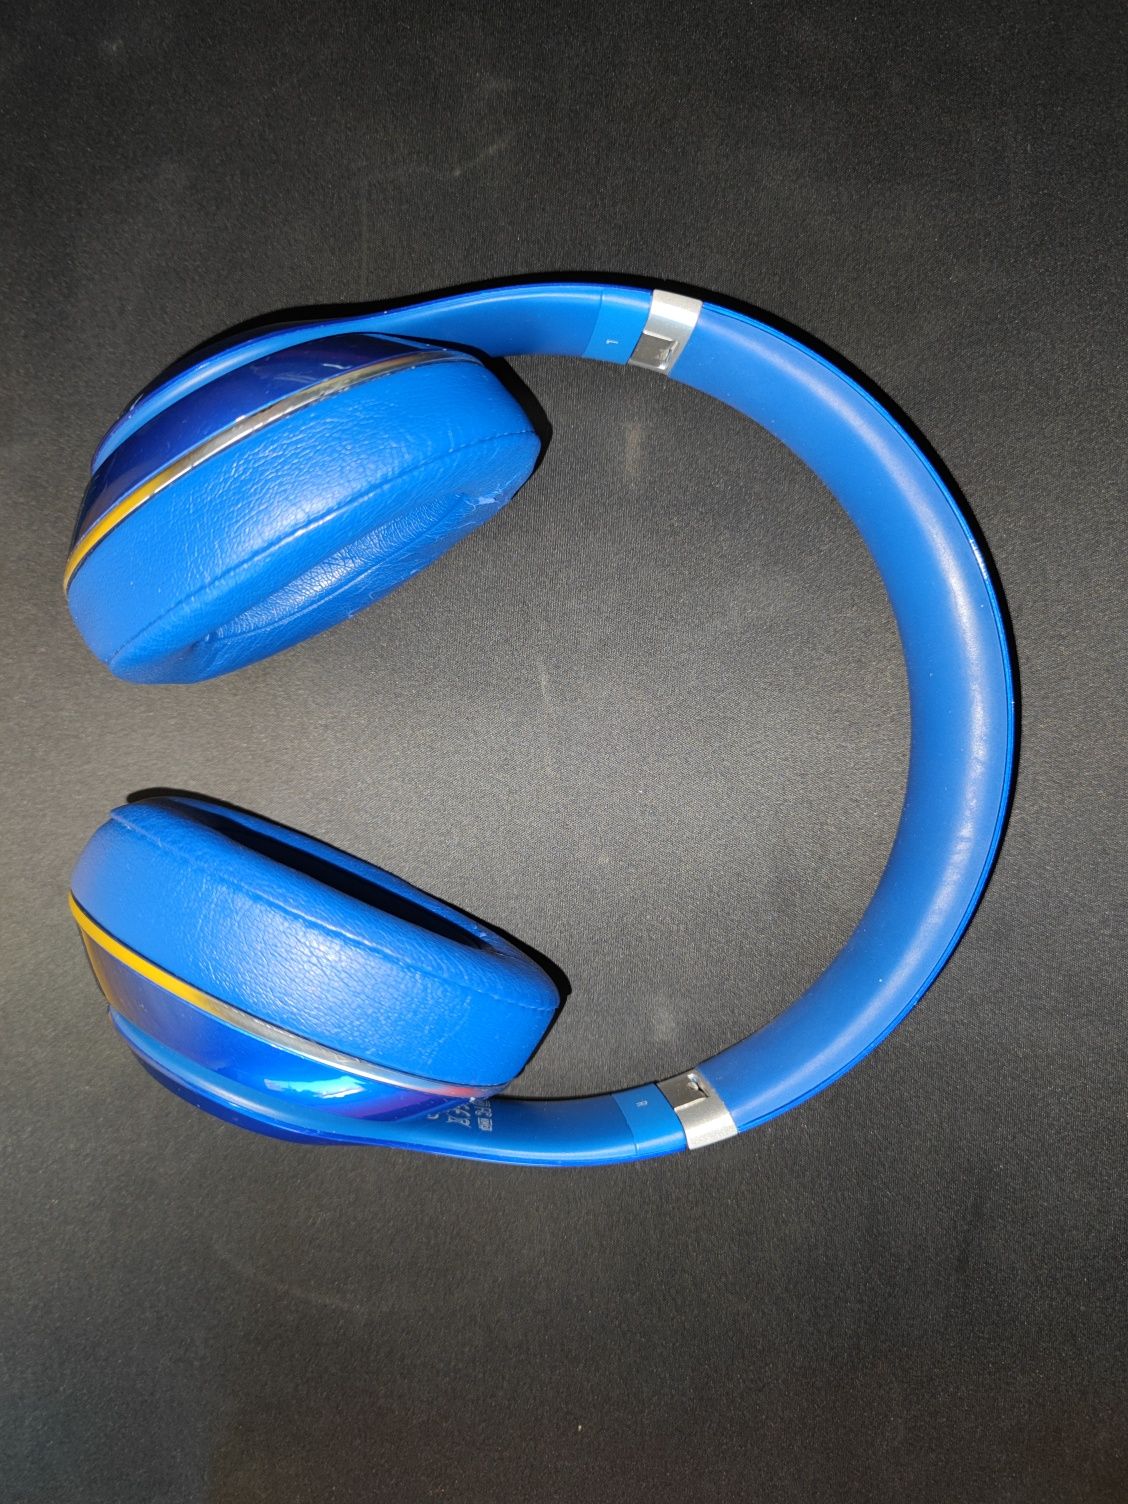 Słuchawki Beats studio niebieskie przewodowe